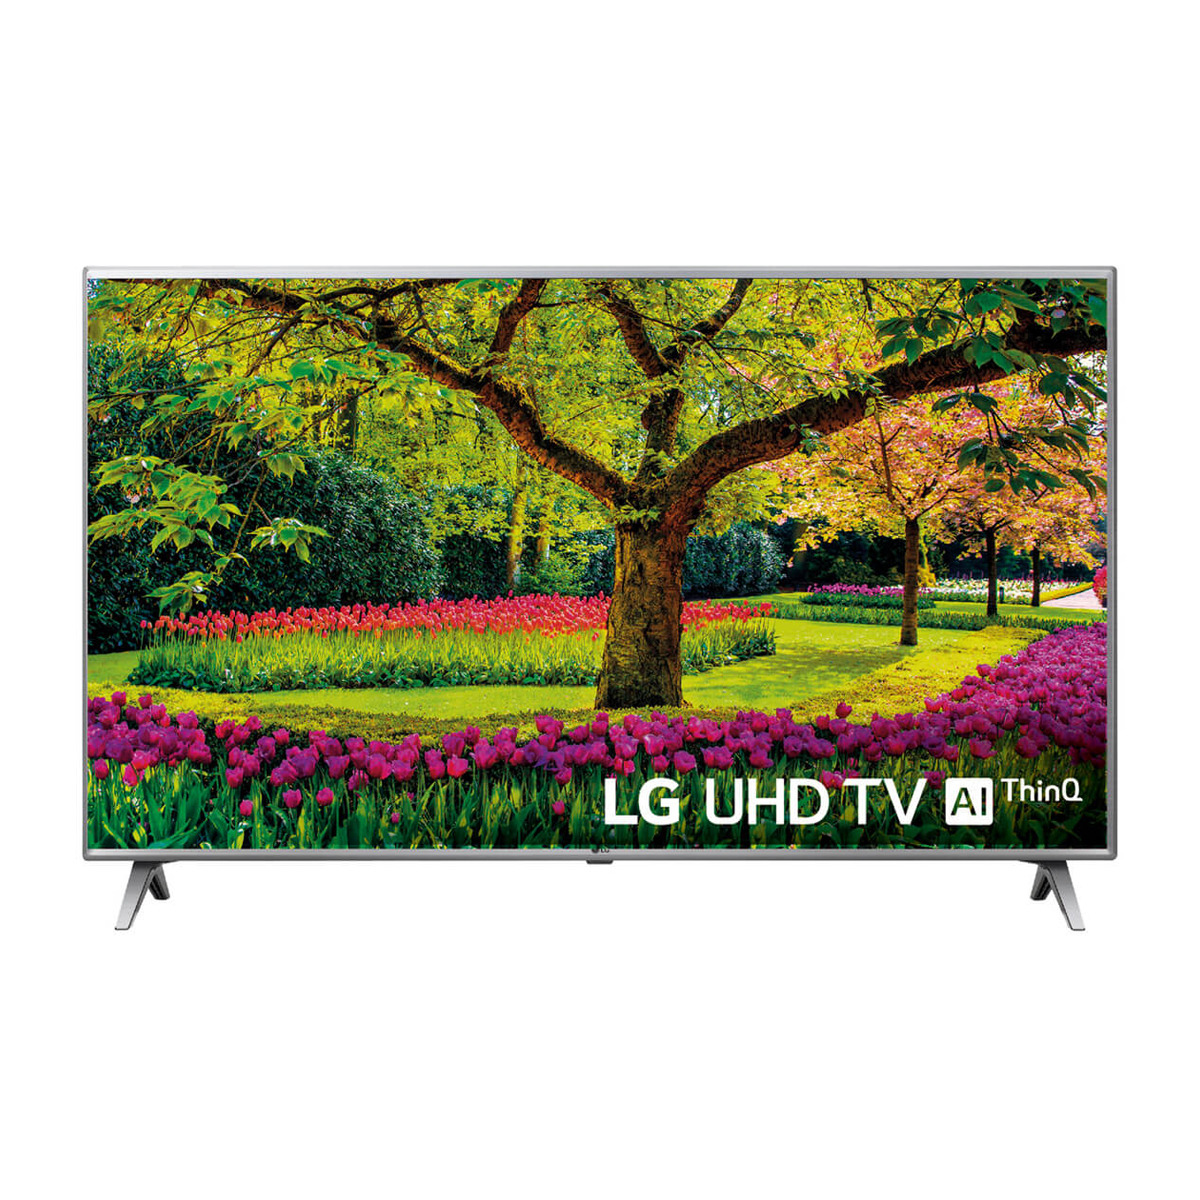 LG  TV LED (50'') LG 50UK6500PLA UHD 4K, Smart TV con IA, HDR, Wi-Fi